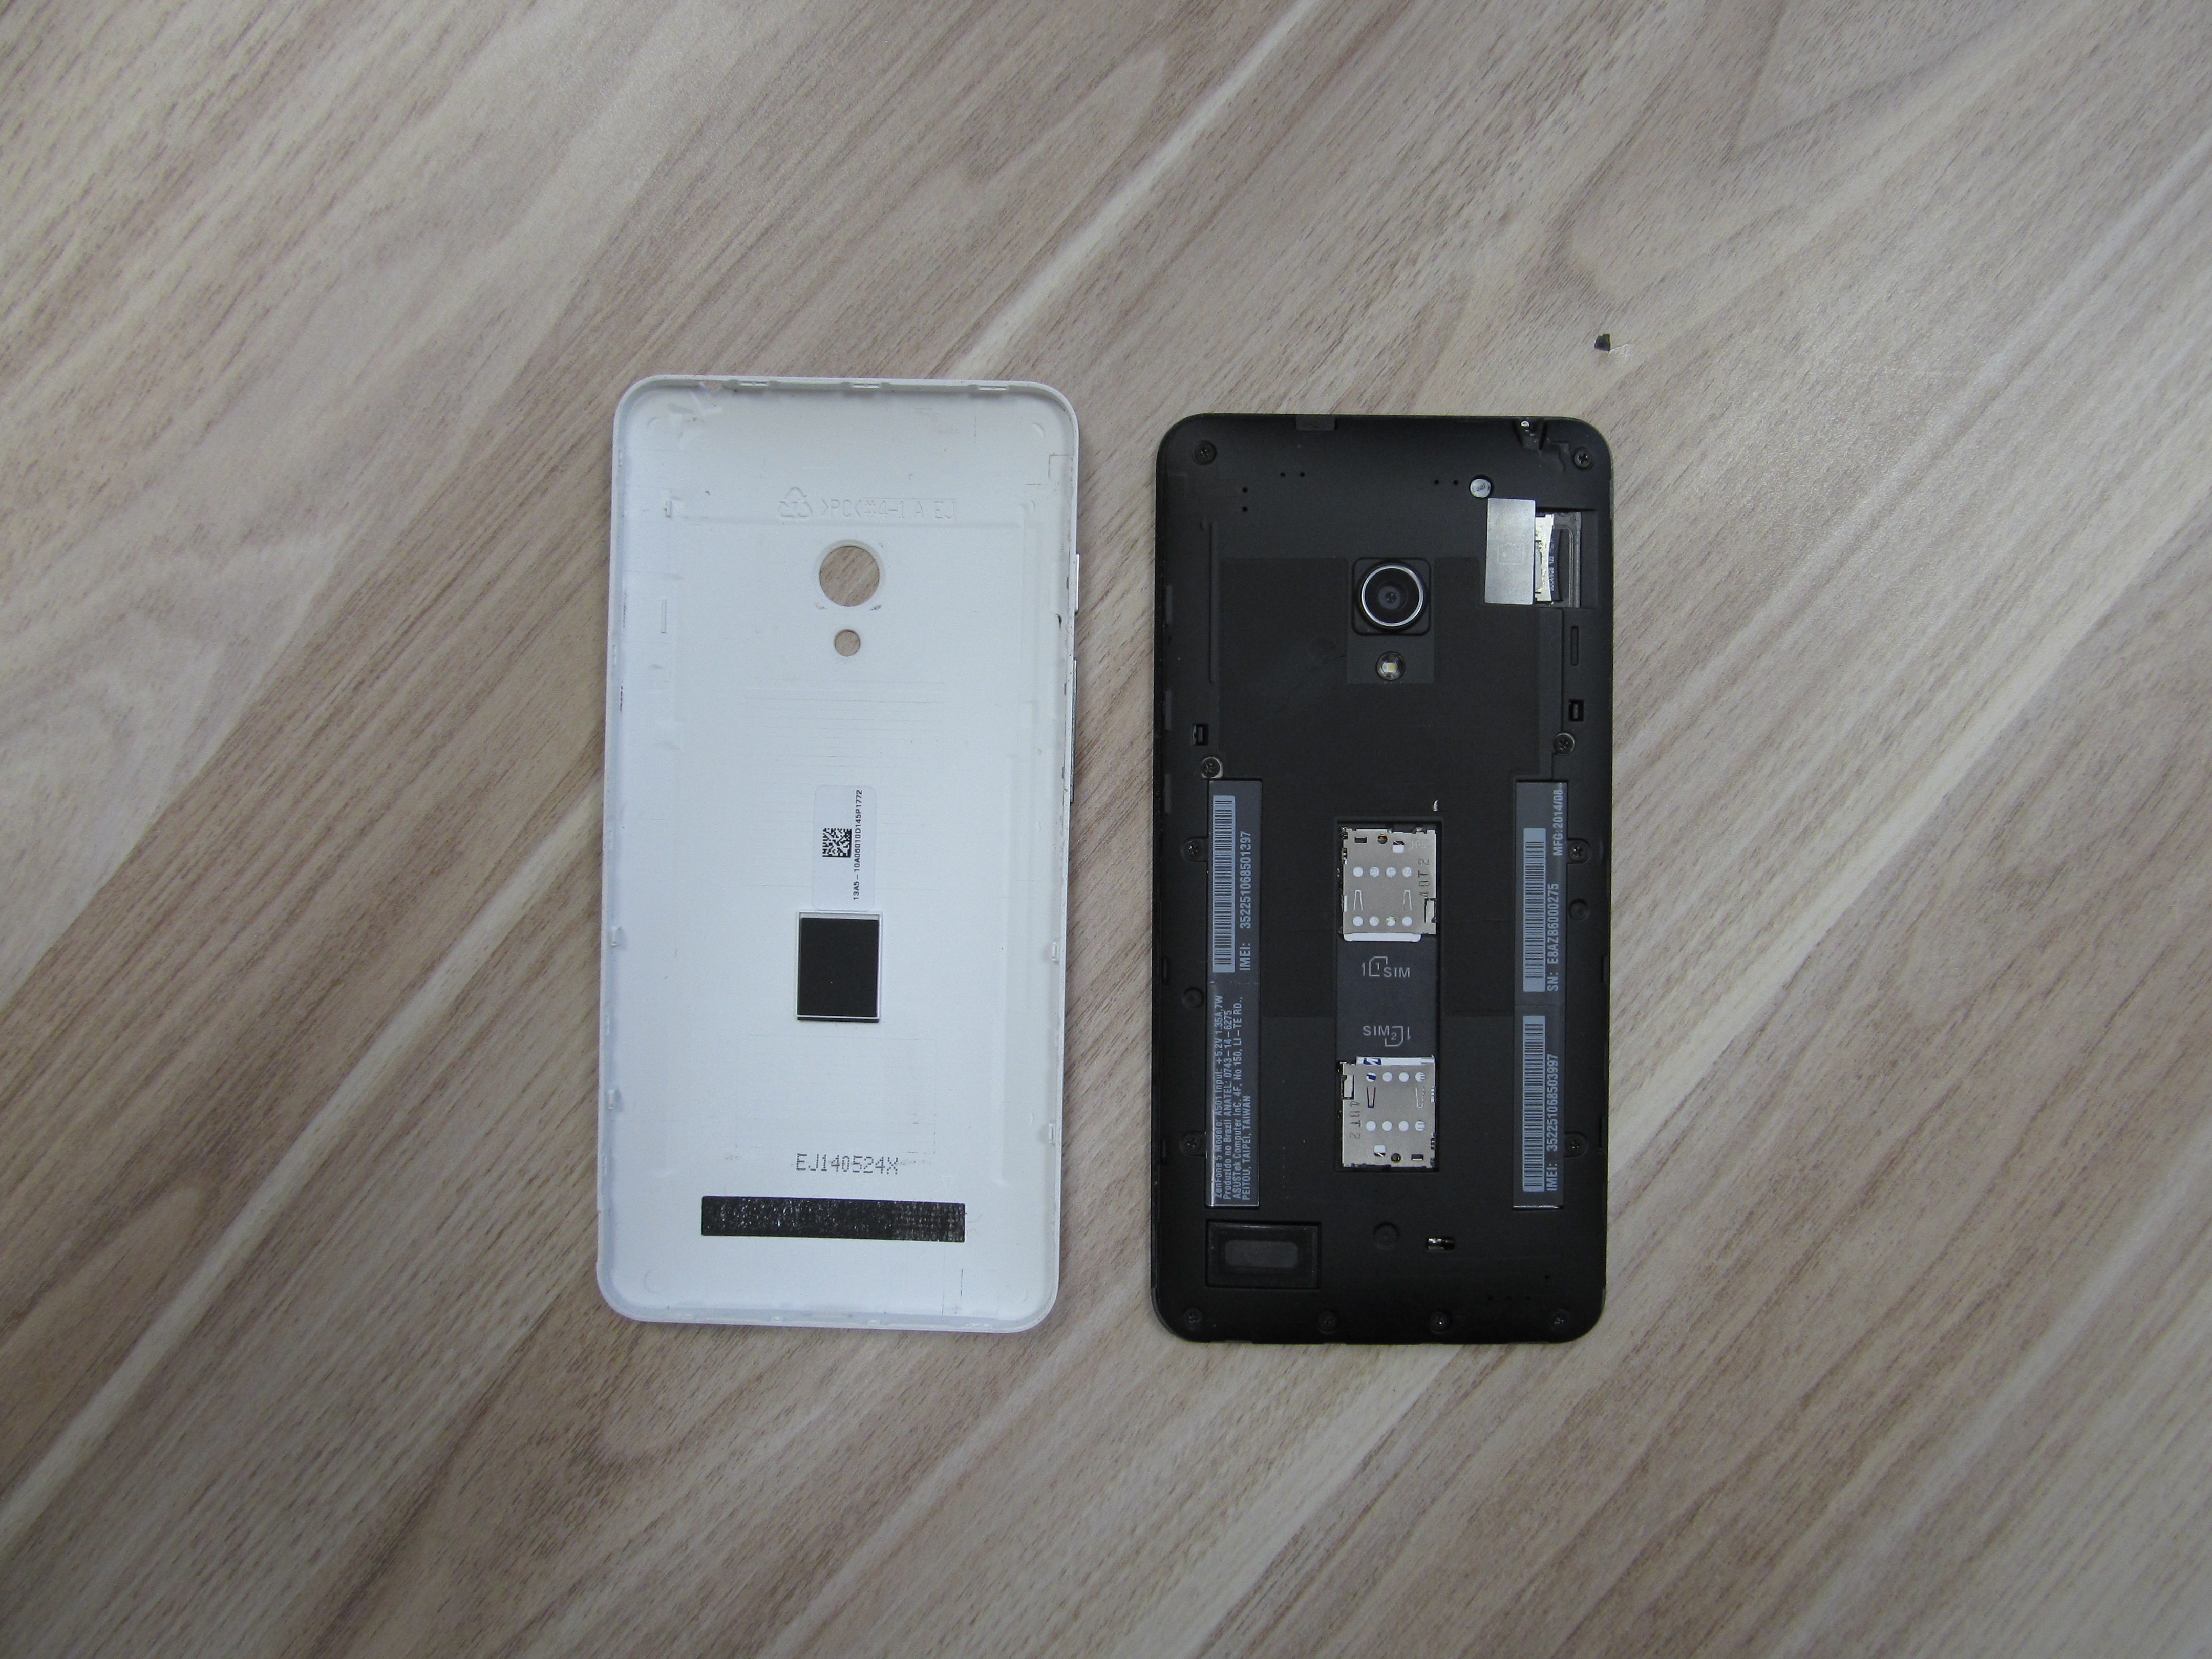 O smartphone vem com entrada para dois chips e cartão microSD